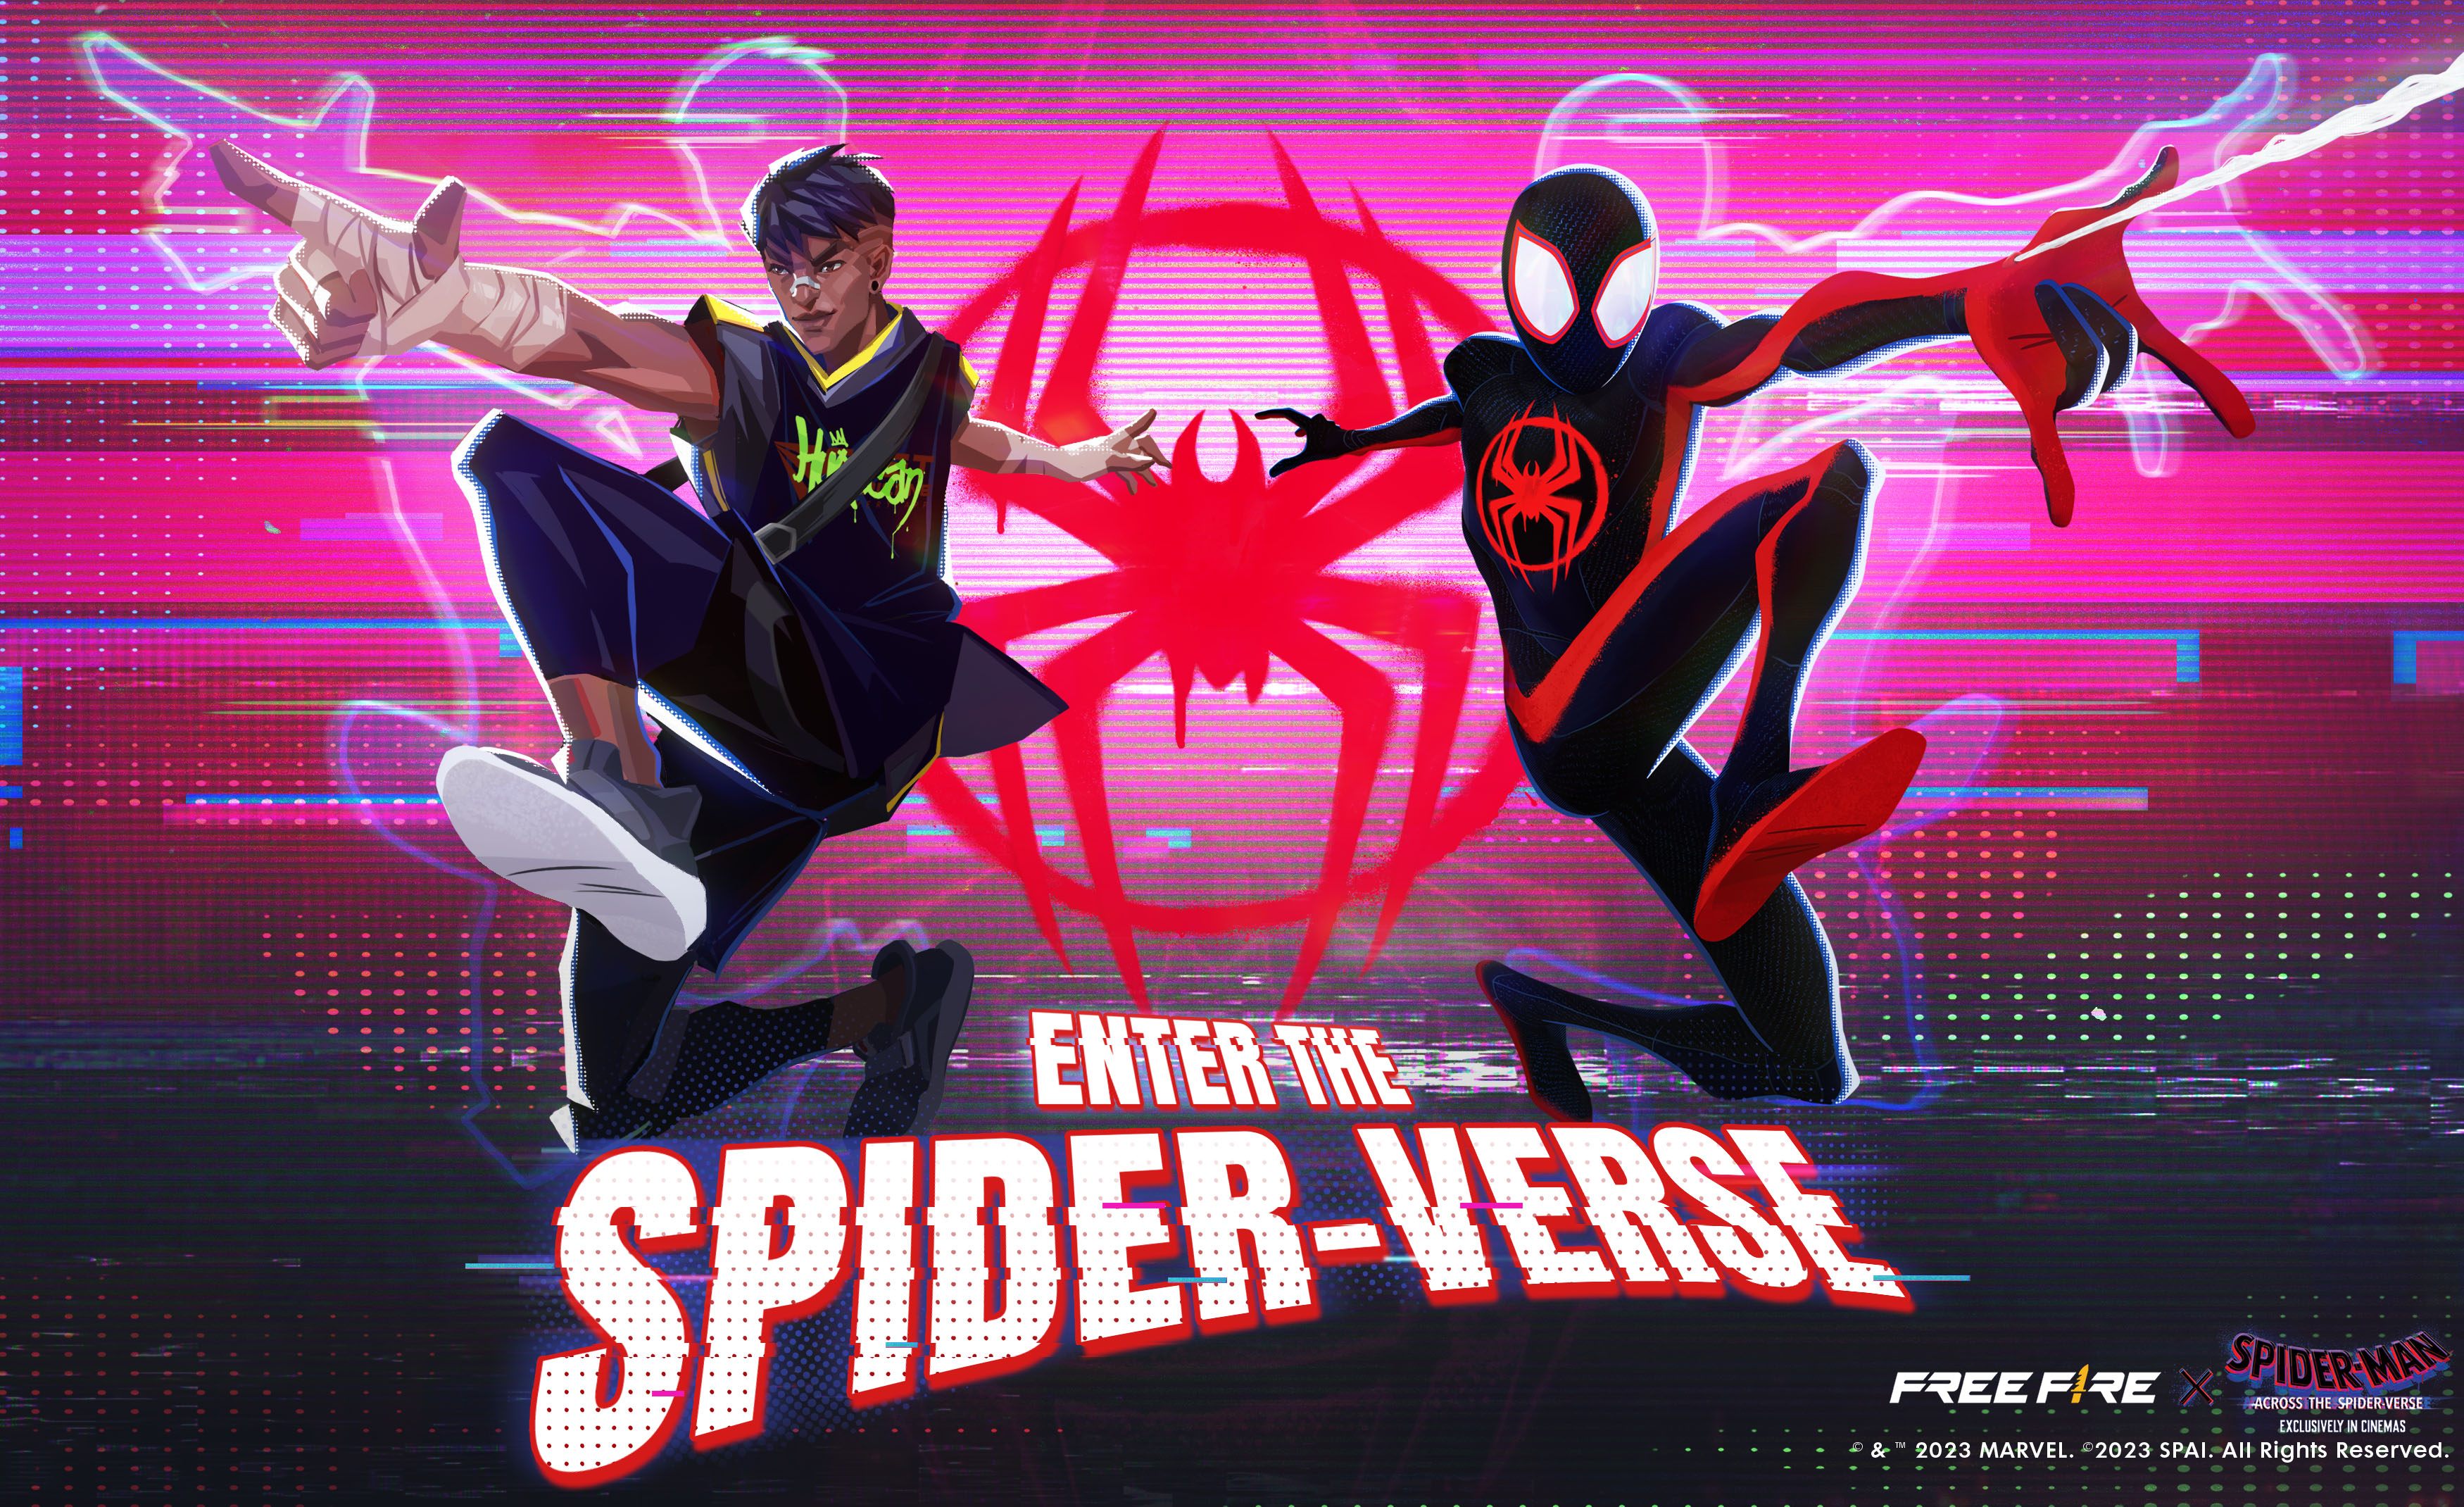 Free Fire x Spider-Man Across The Spider-Verse Kollaboration: Alles, was du wissen musst